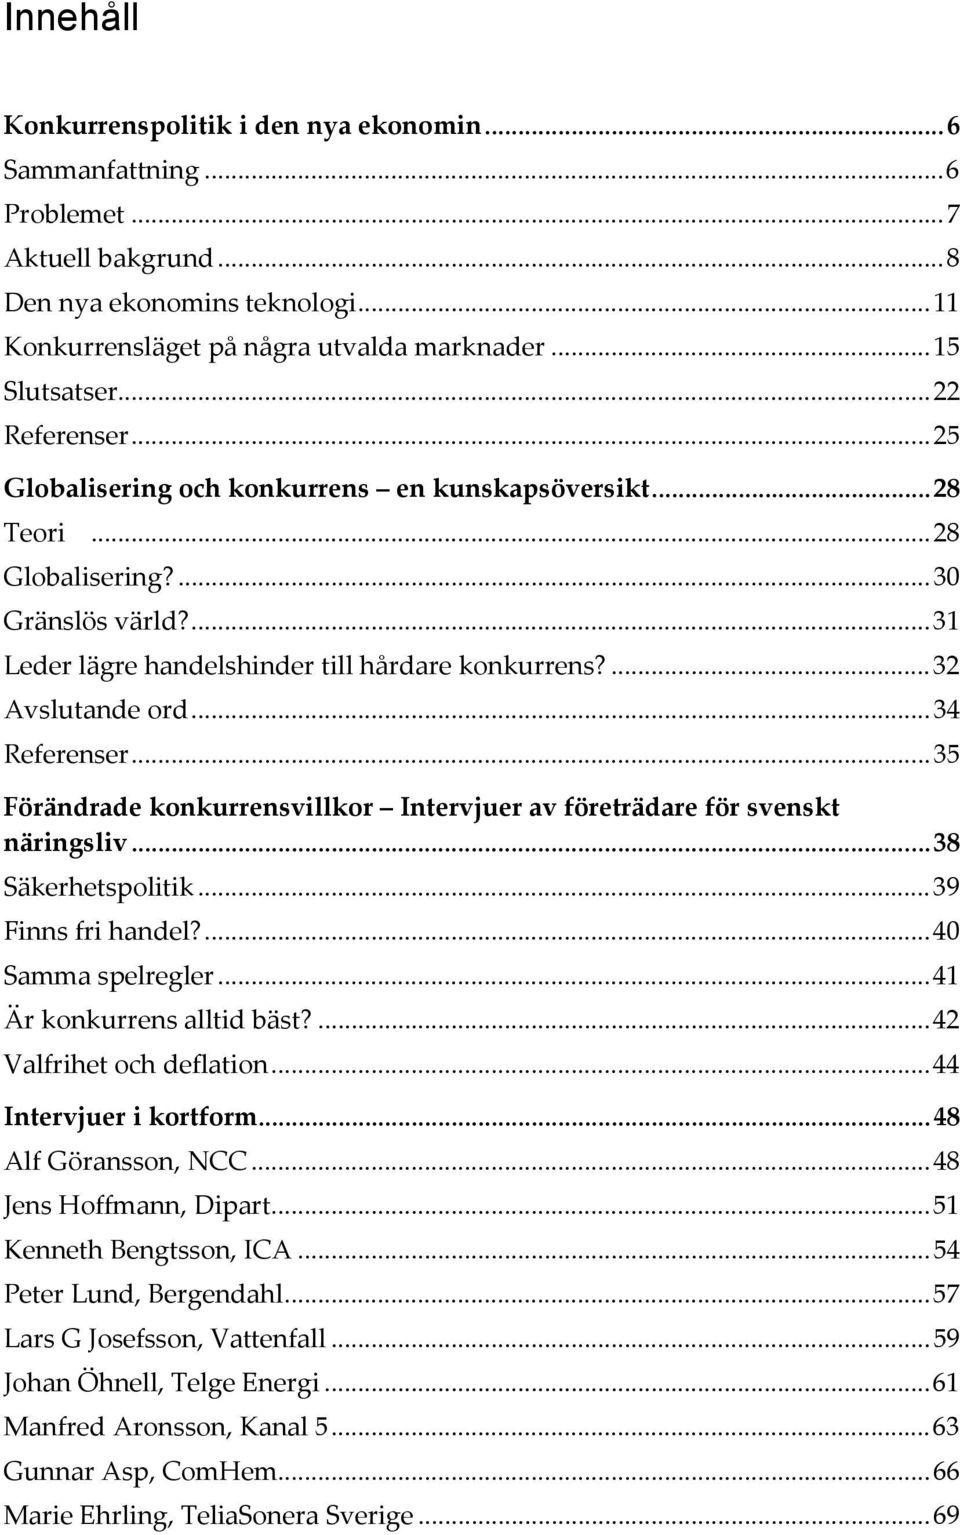 ..34 Referenser...35 Förändrade konkurrensvillkor Intervjuer av företrädare för svenskt näringsliv...38 Säkerhetspolitik...39 Finns fri handel?...40 Samma spelregler...41 Är konkurrens alltid bäst?